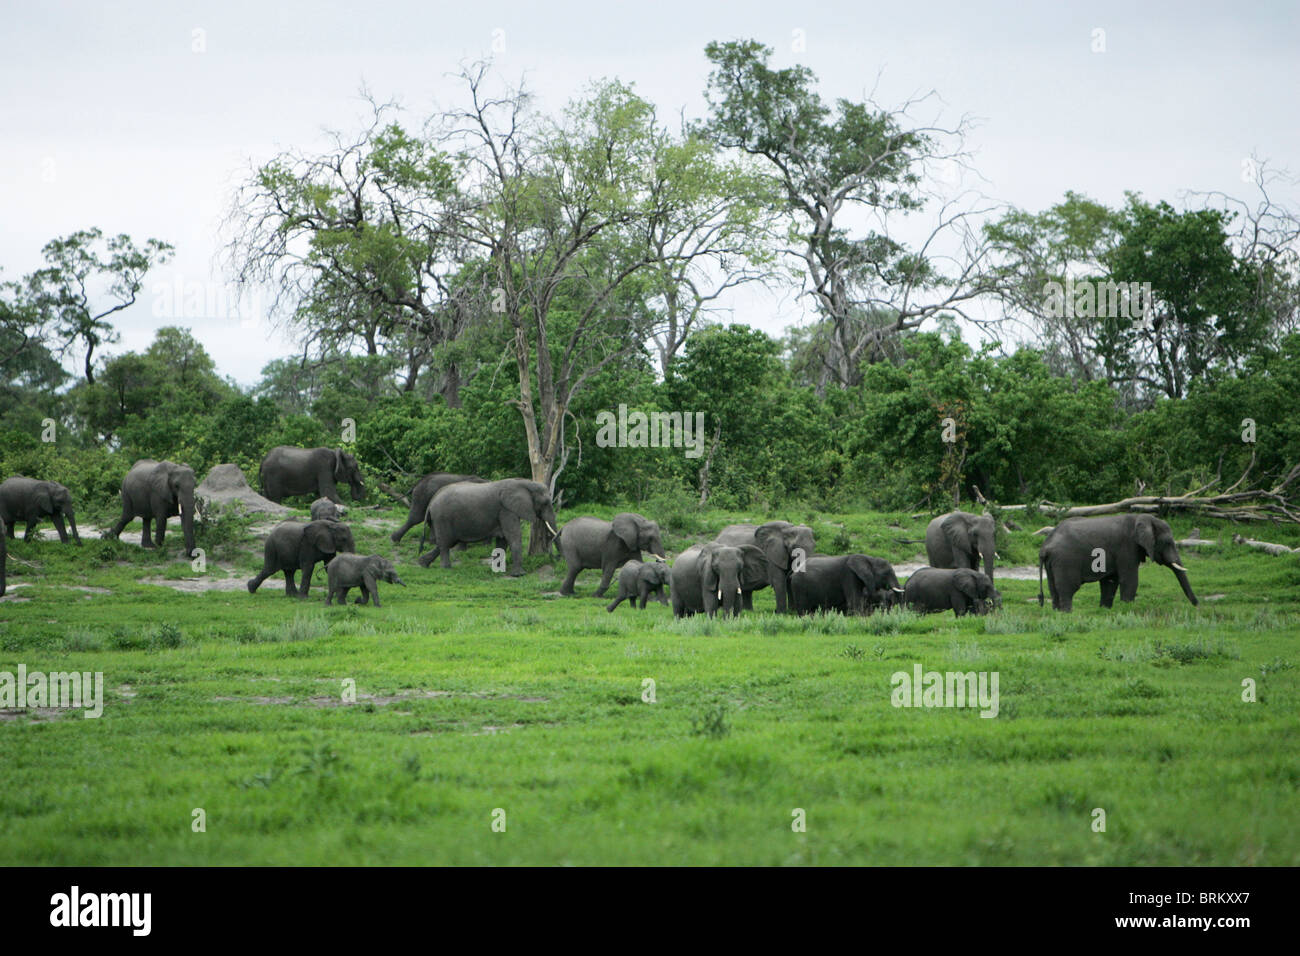 Branco di elefanti a piedi attraverso il verde della vegetazione lussureggiante, Foto Stock